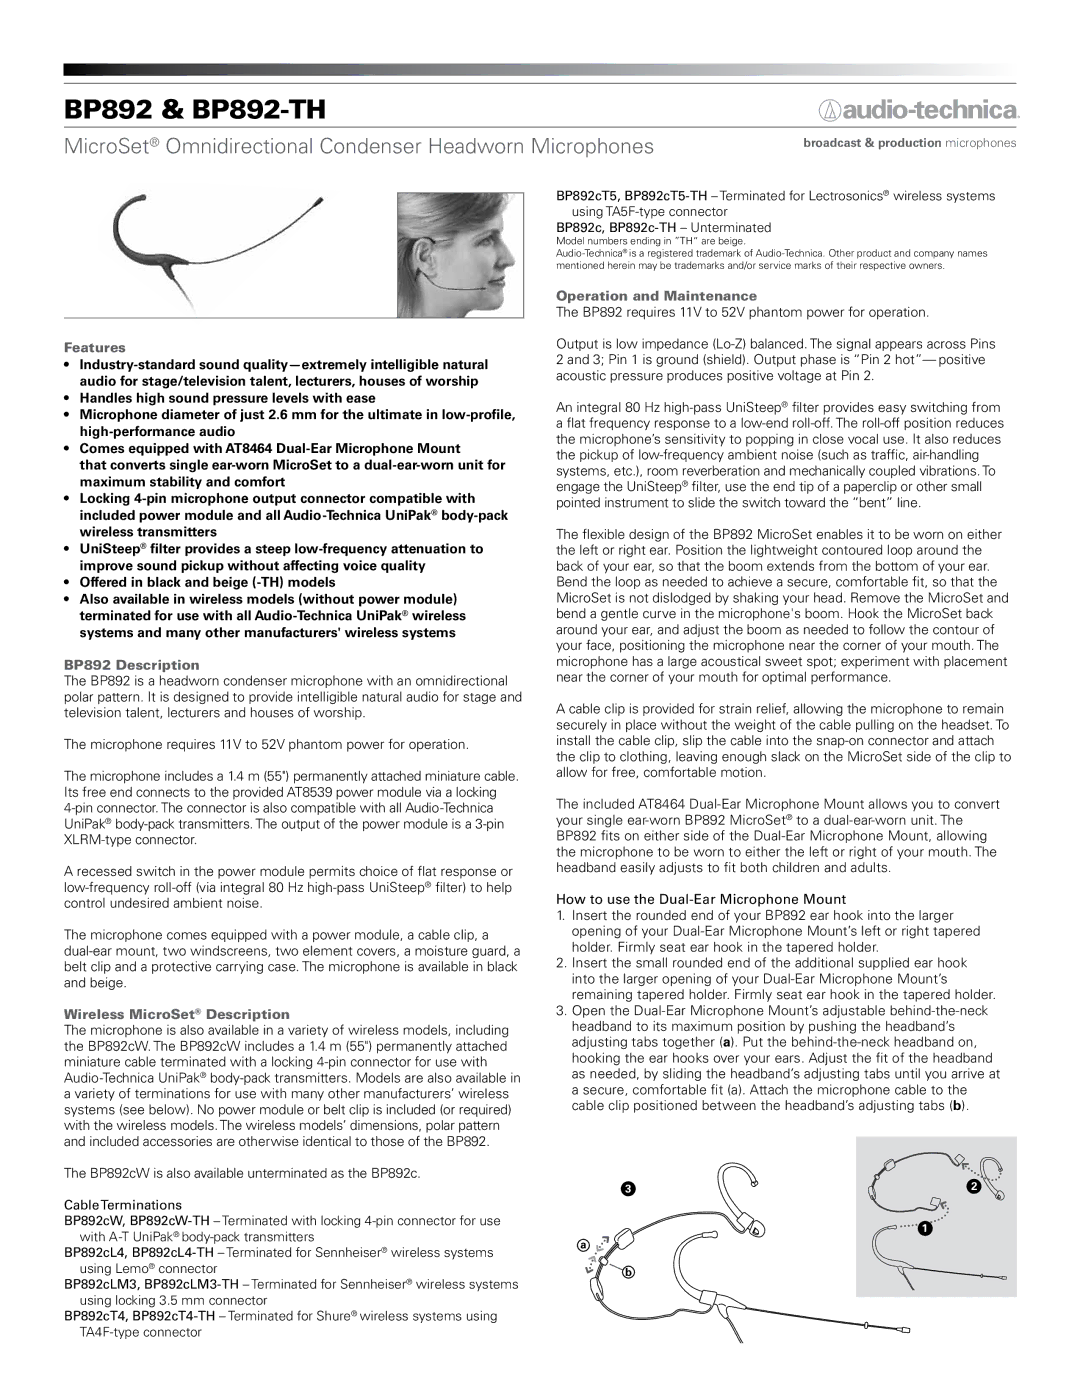 Audio-Technica BP892 & BP892-TH dimensions Features, BP892 Description, Wireless MicroSet Description 